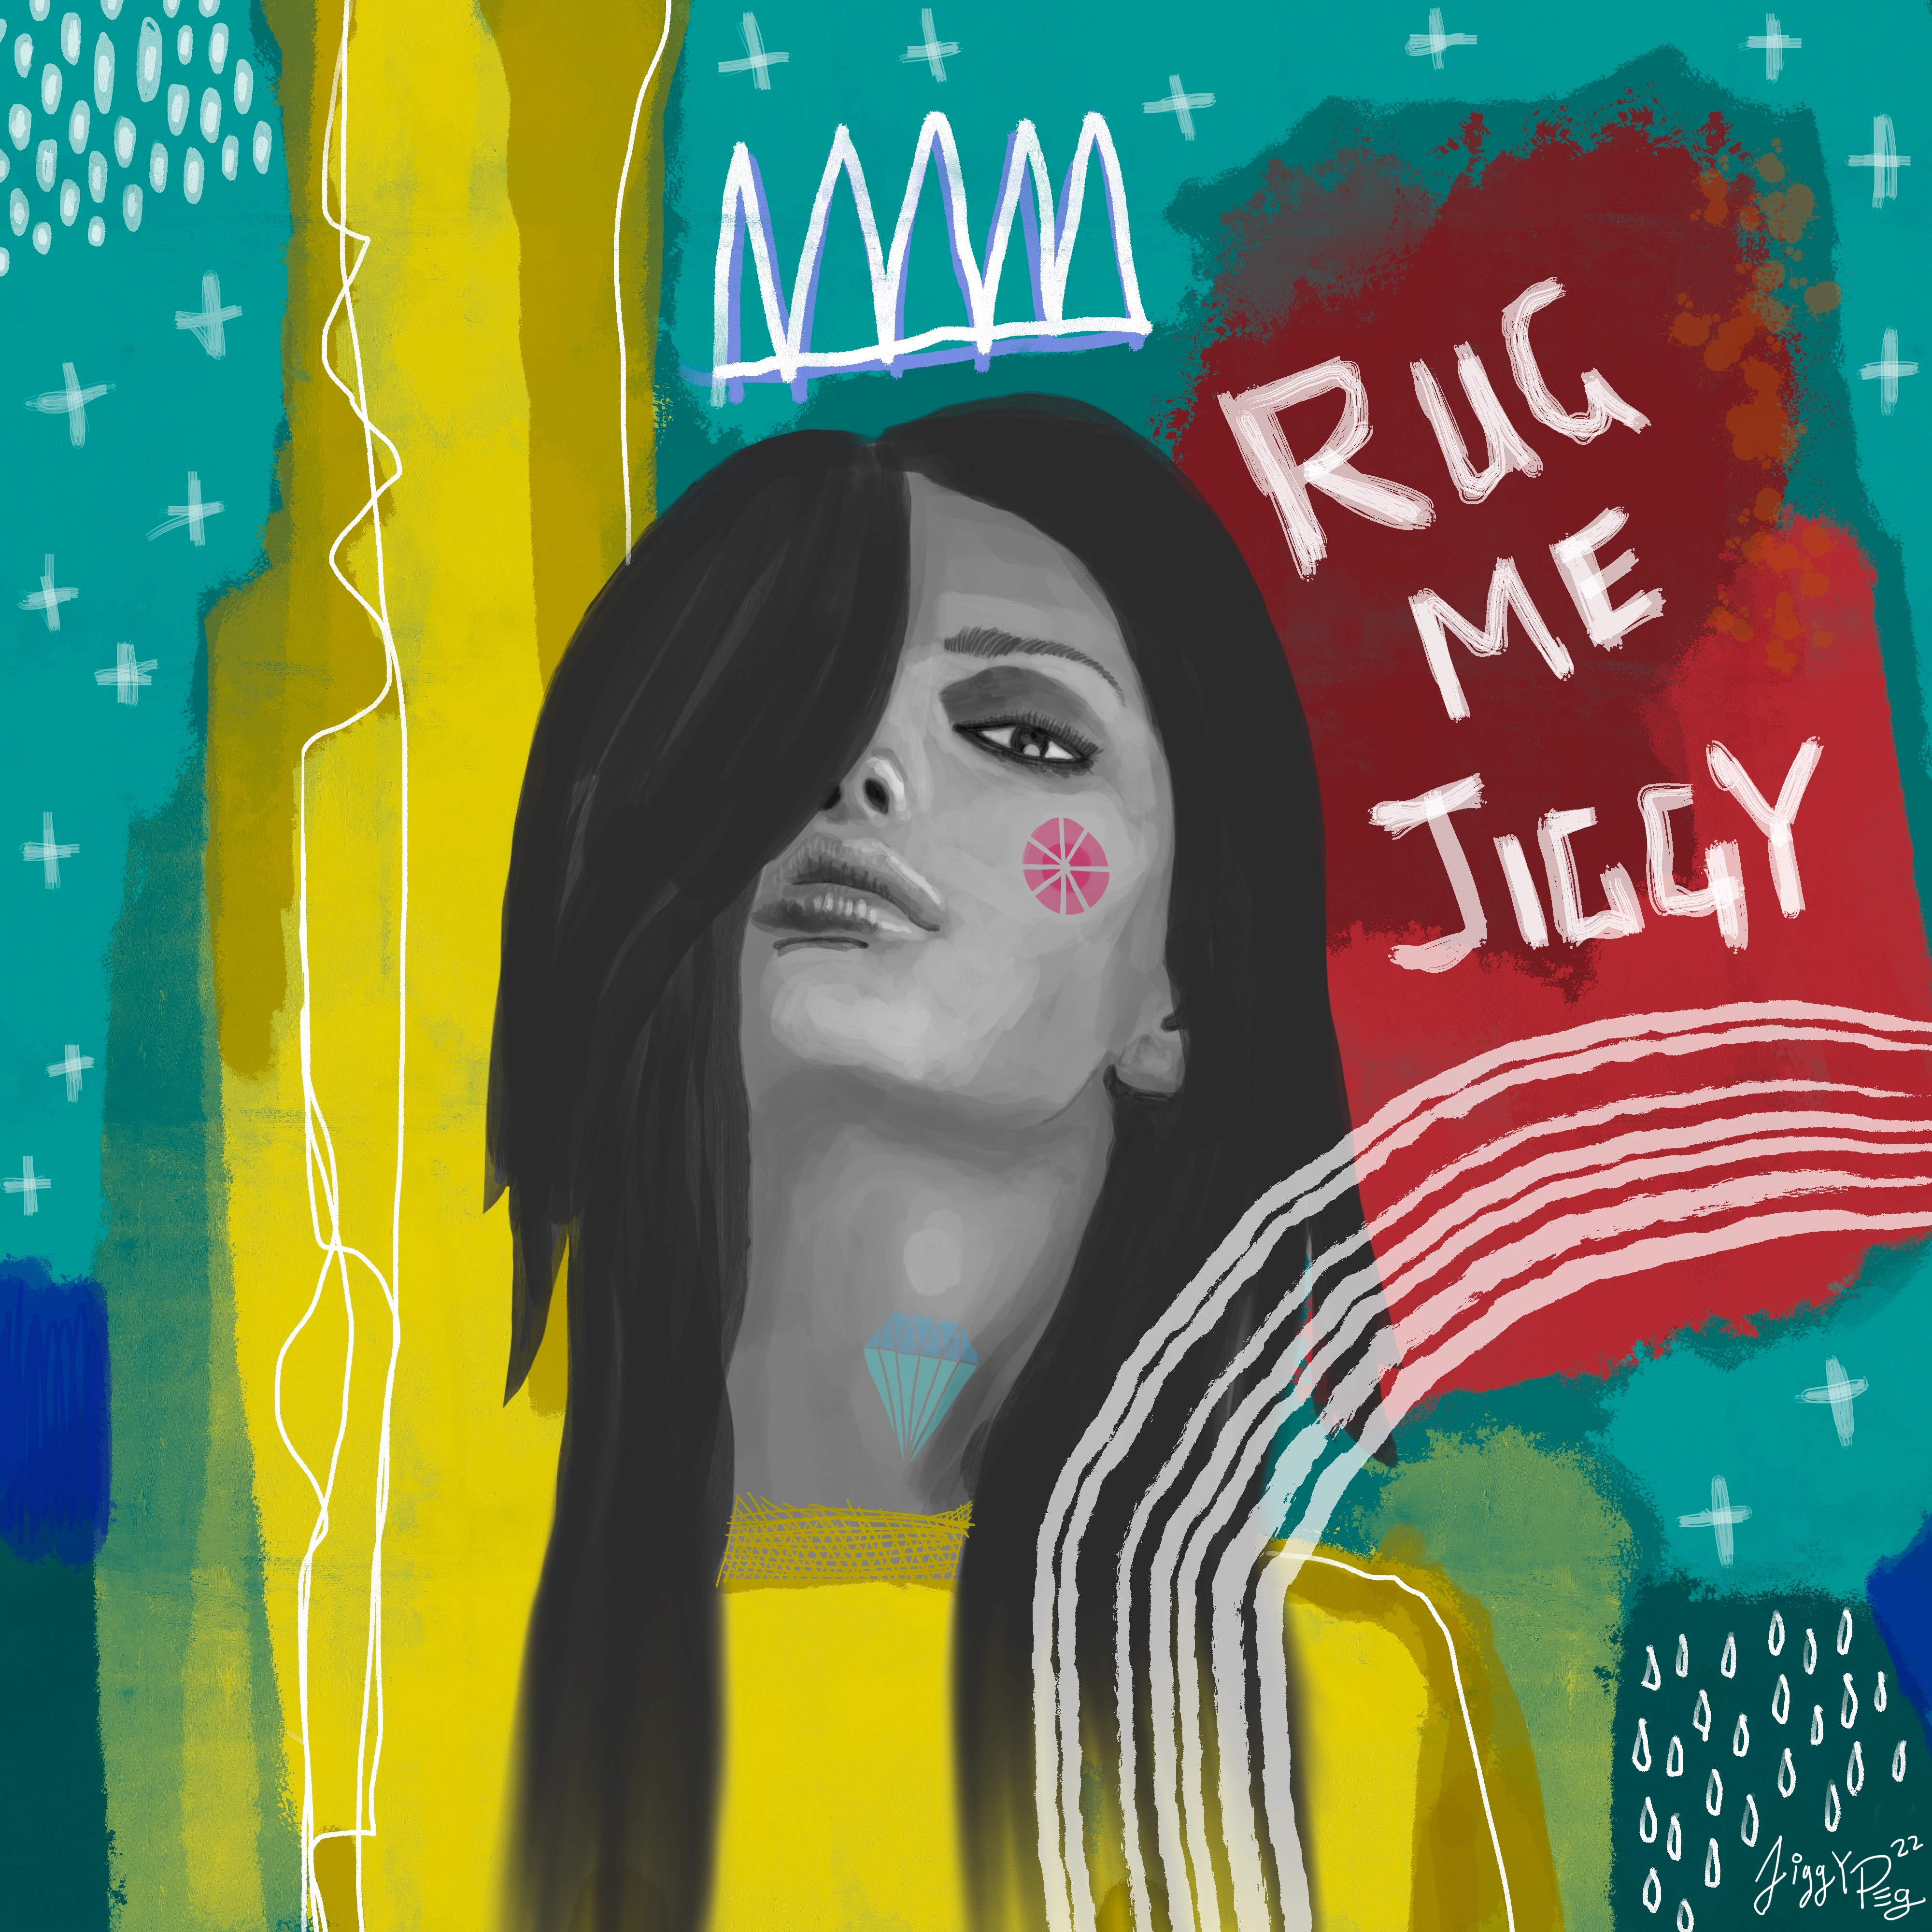 Rug me Jiggy